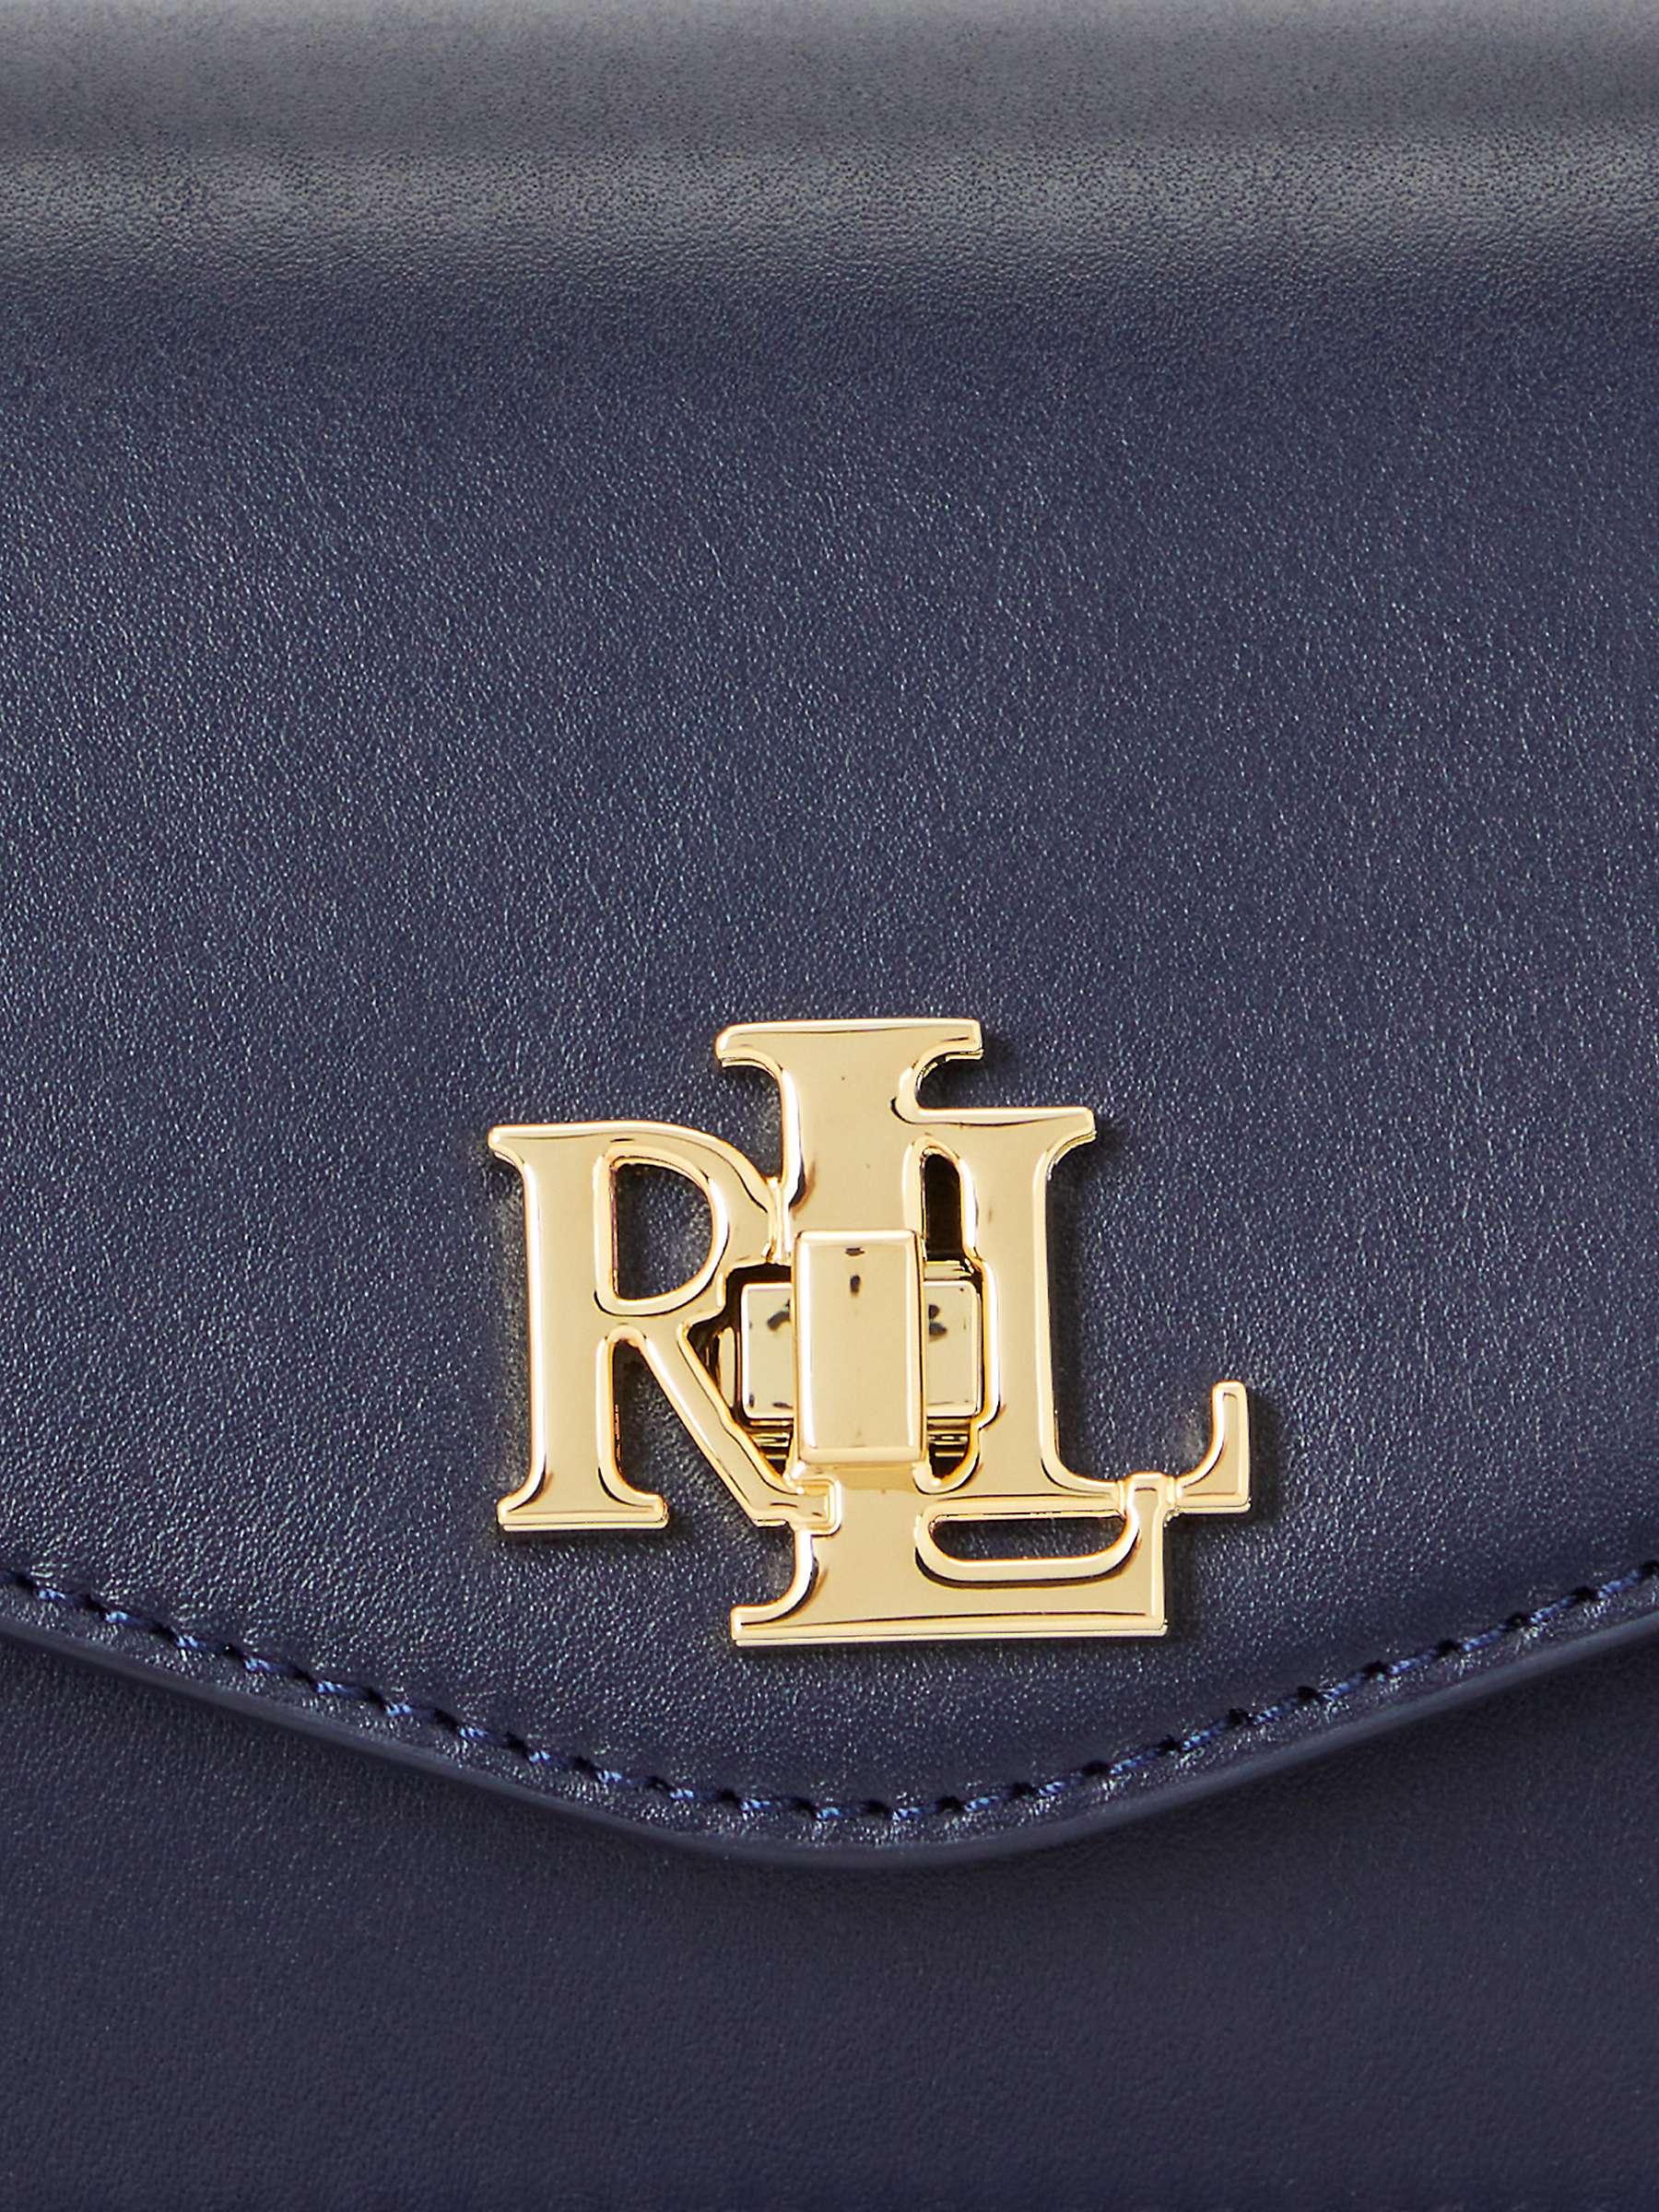 Buy Lauren Ralph Lauren Tayler Full Grain Leather Cross Body Bag, Navy Online at johnlewis.com